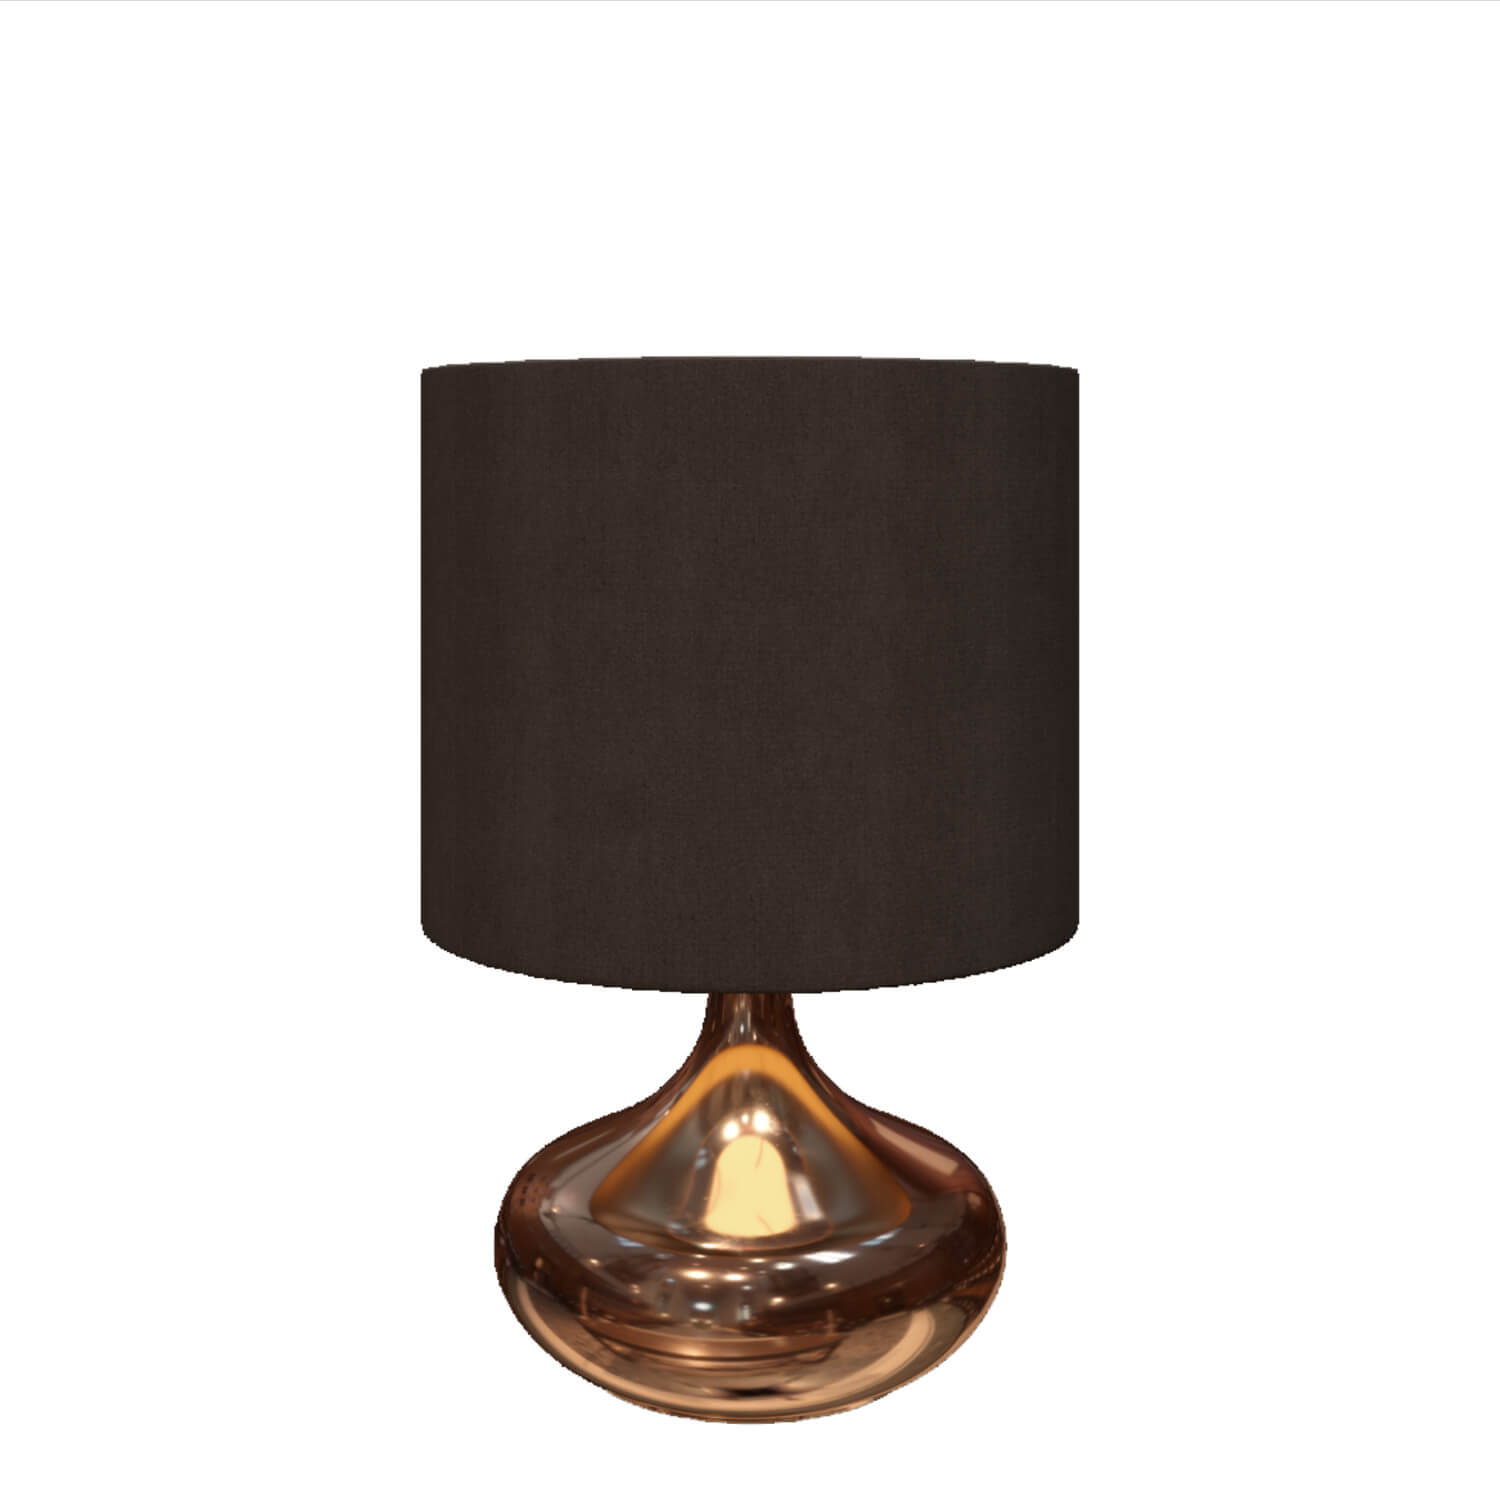 Tialia II table lamp